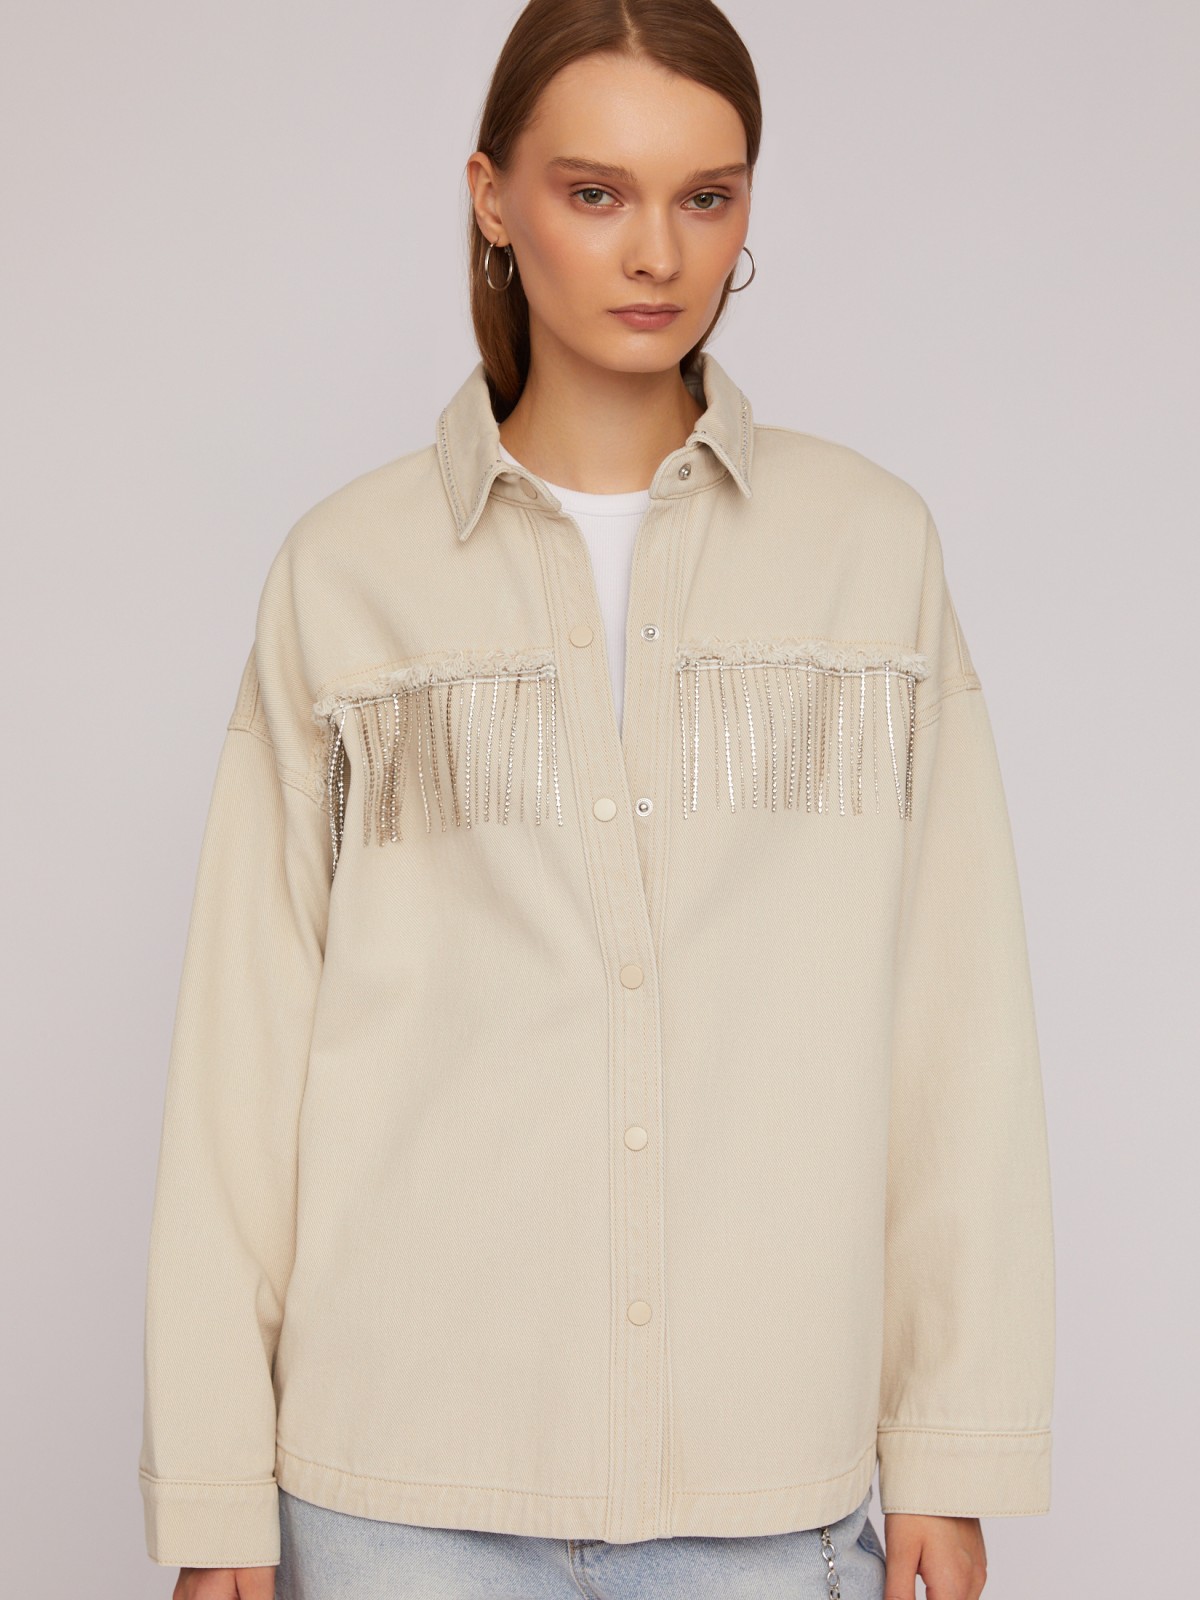 Джинсовая куртка-рубашка с бахромой со стразами zolla 024215D0V011, цвет бежевый, размер XS - фото 3